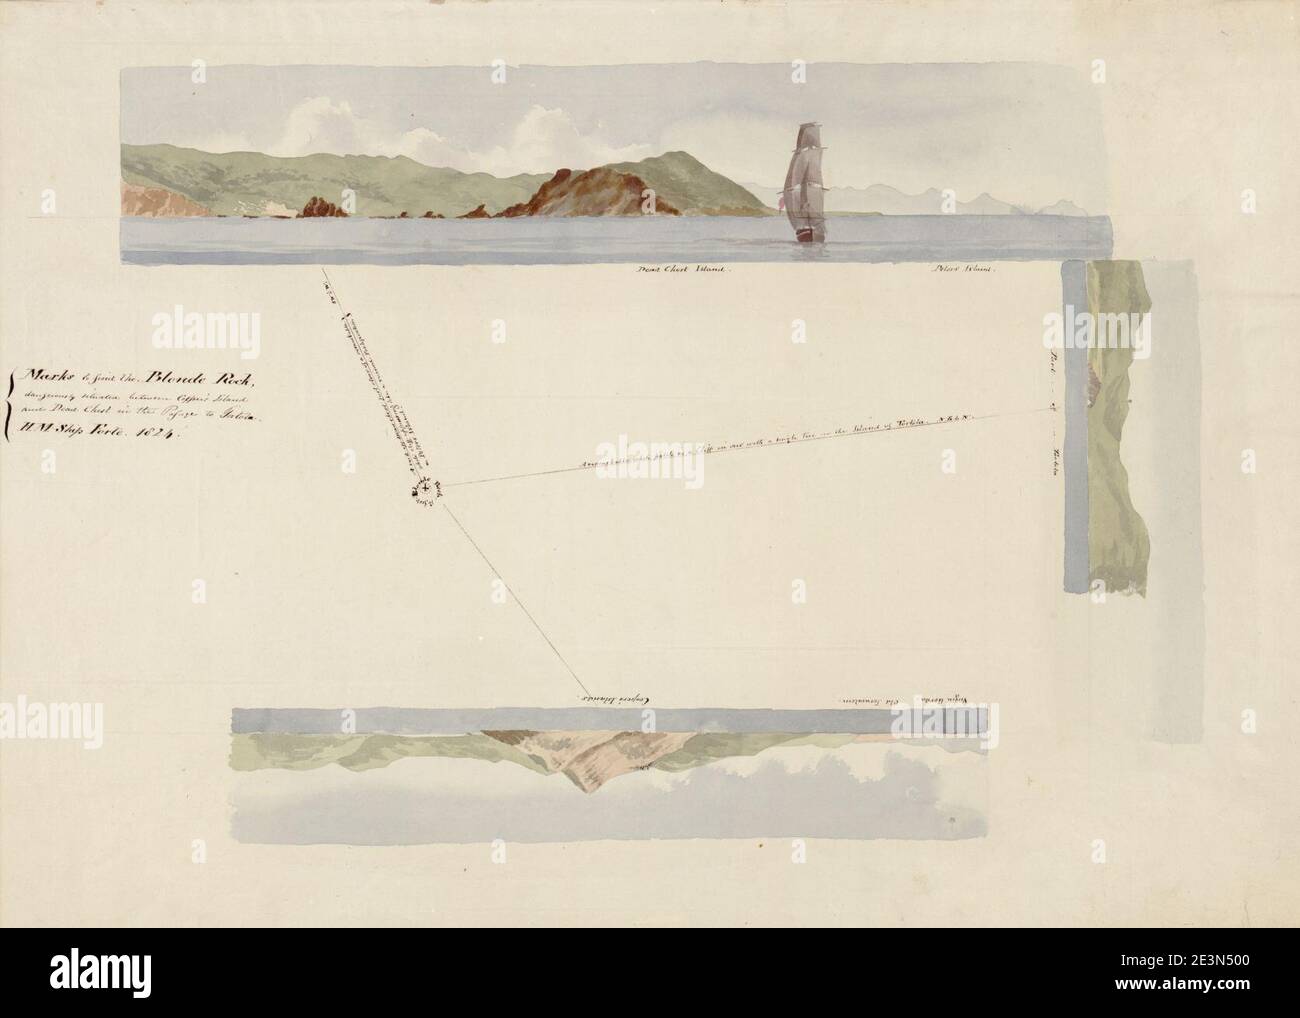 Marks to Find the Blond Rock pericolosamente situato tra Copper's Island e Dead Chest nel passaggio per Tortola, H.M. Ship Forte, 1824. Foto Stock